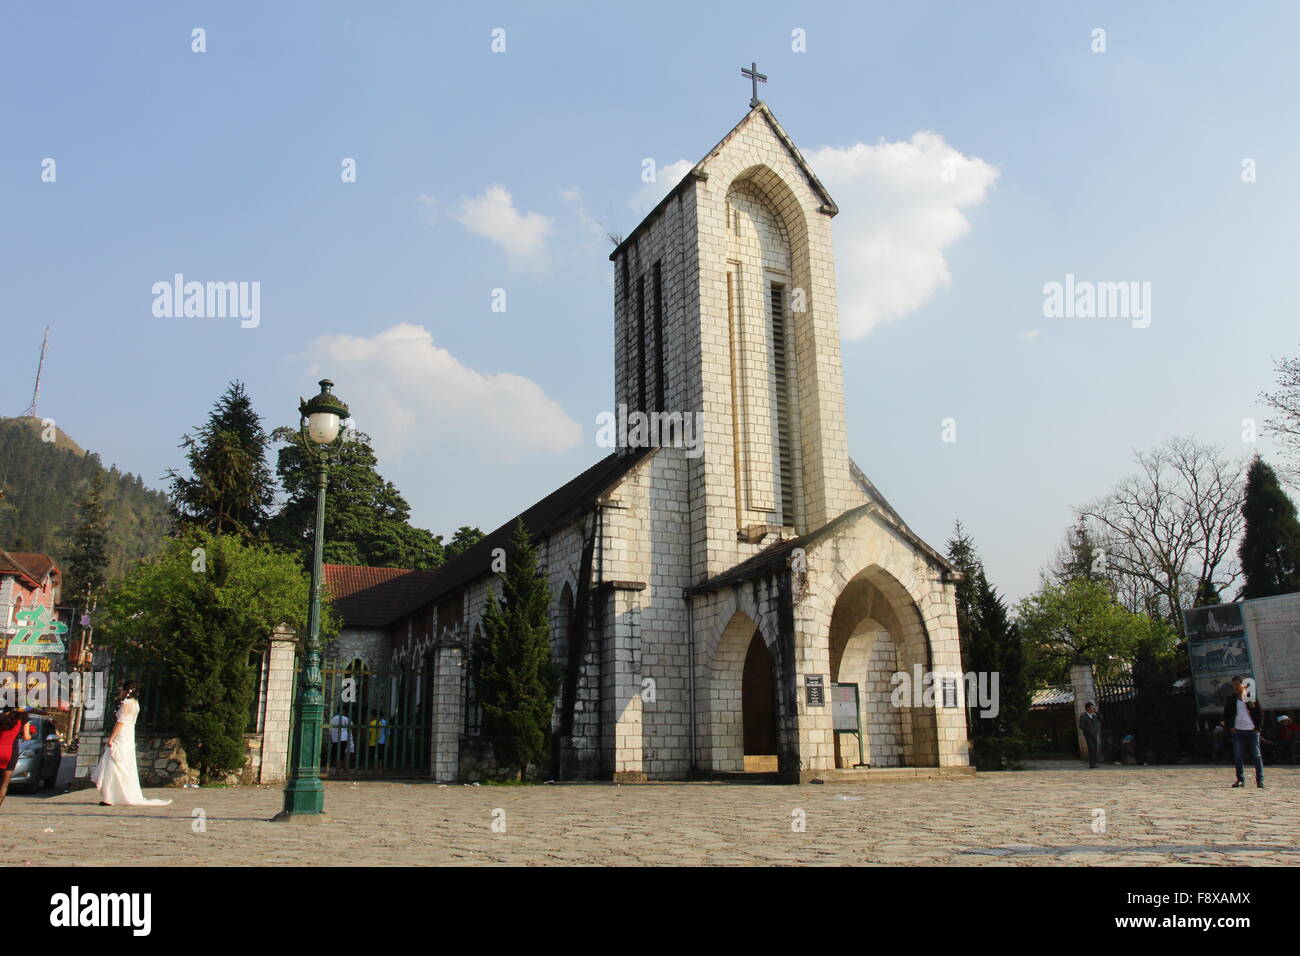 SAPA, SAPA, Vietnam - l'église catholique Saint Rosaire et de la place principale de Sapa, SAPA, Vietnam. Sapa est la ville dans les montagnes de Hoang Lien Son Territoires du Vietnam Banque D'Images